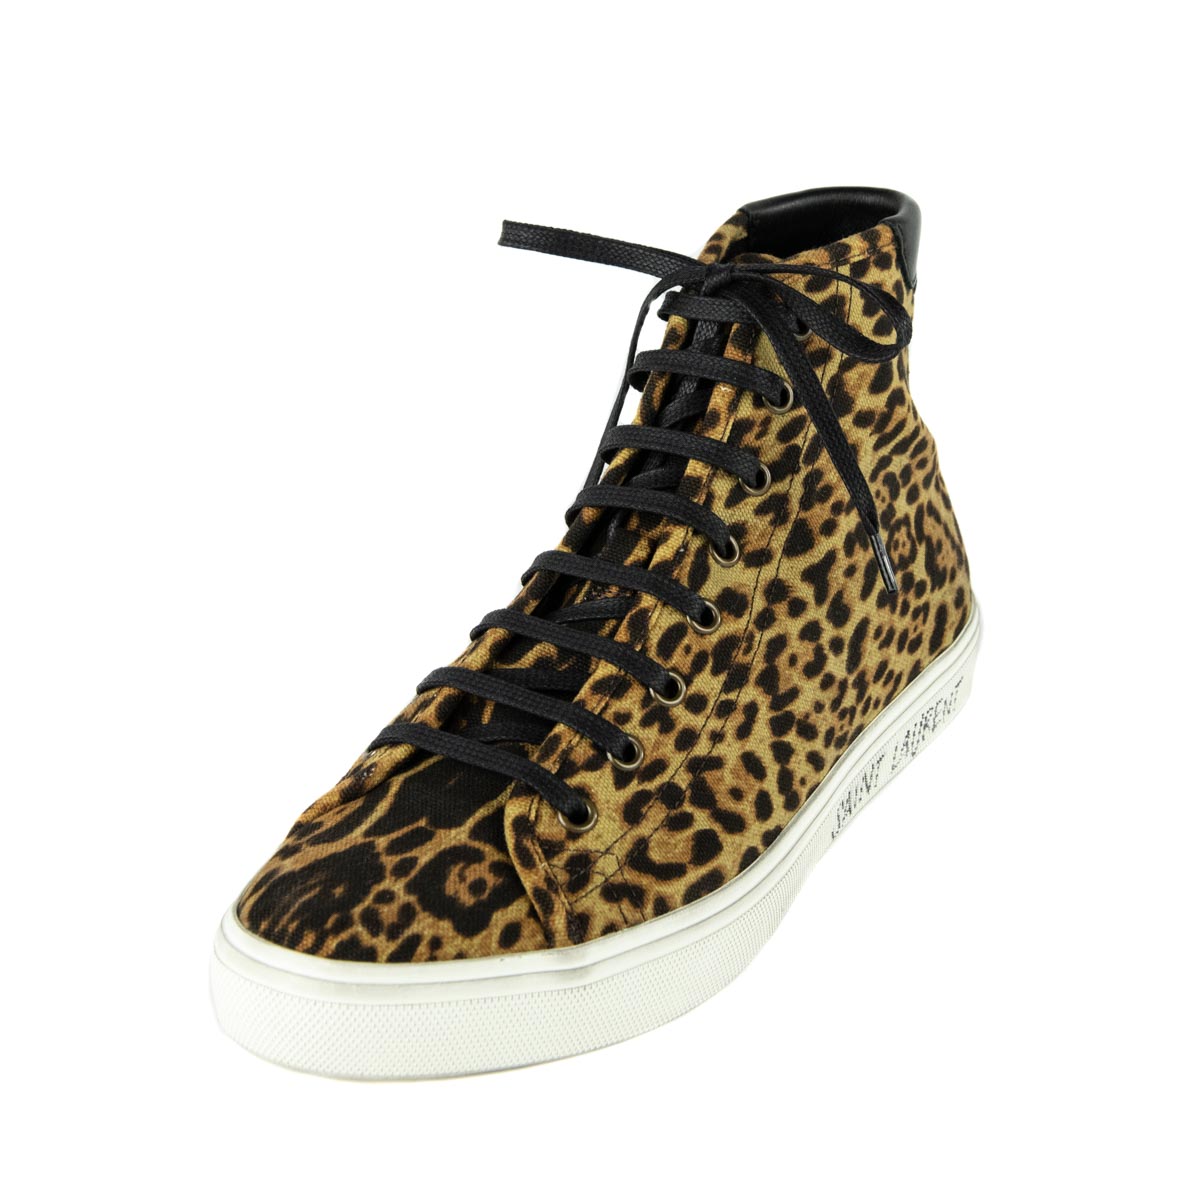 size 11 leopard shoes